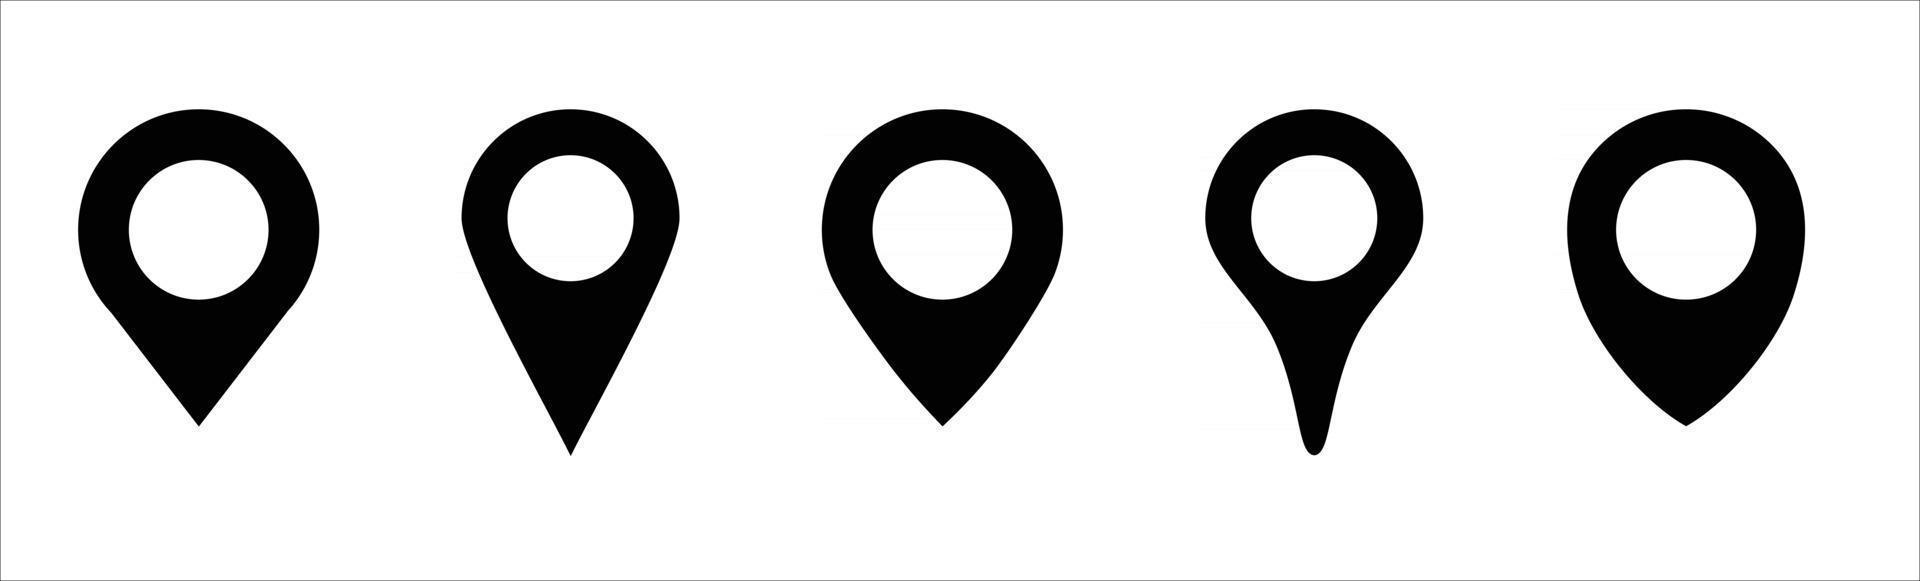 location set icon, location logo vector